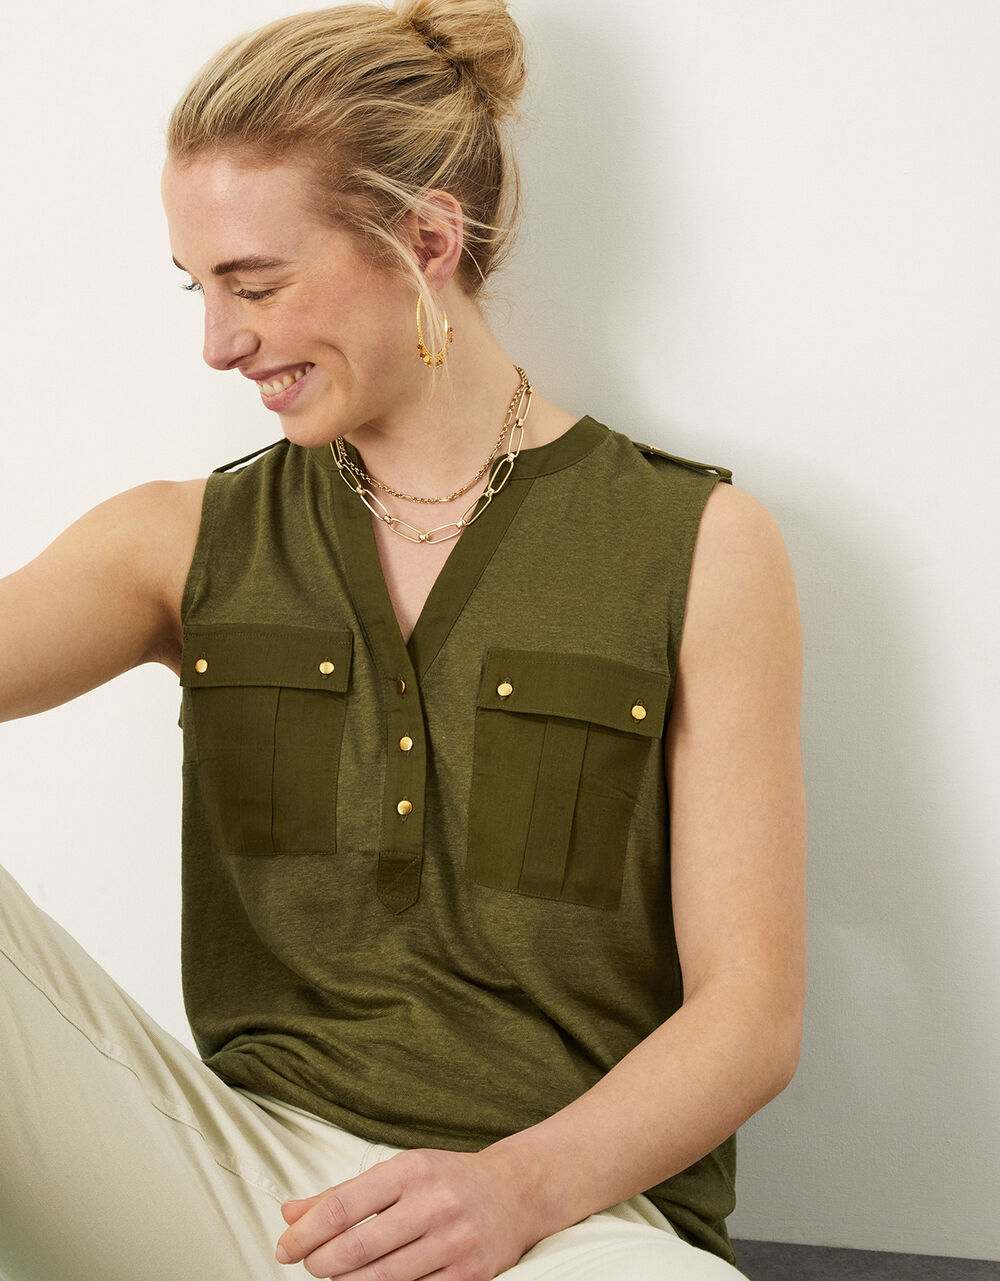 Women Women's Clothing | Woven Linen Tank Top Green - VH31889